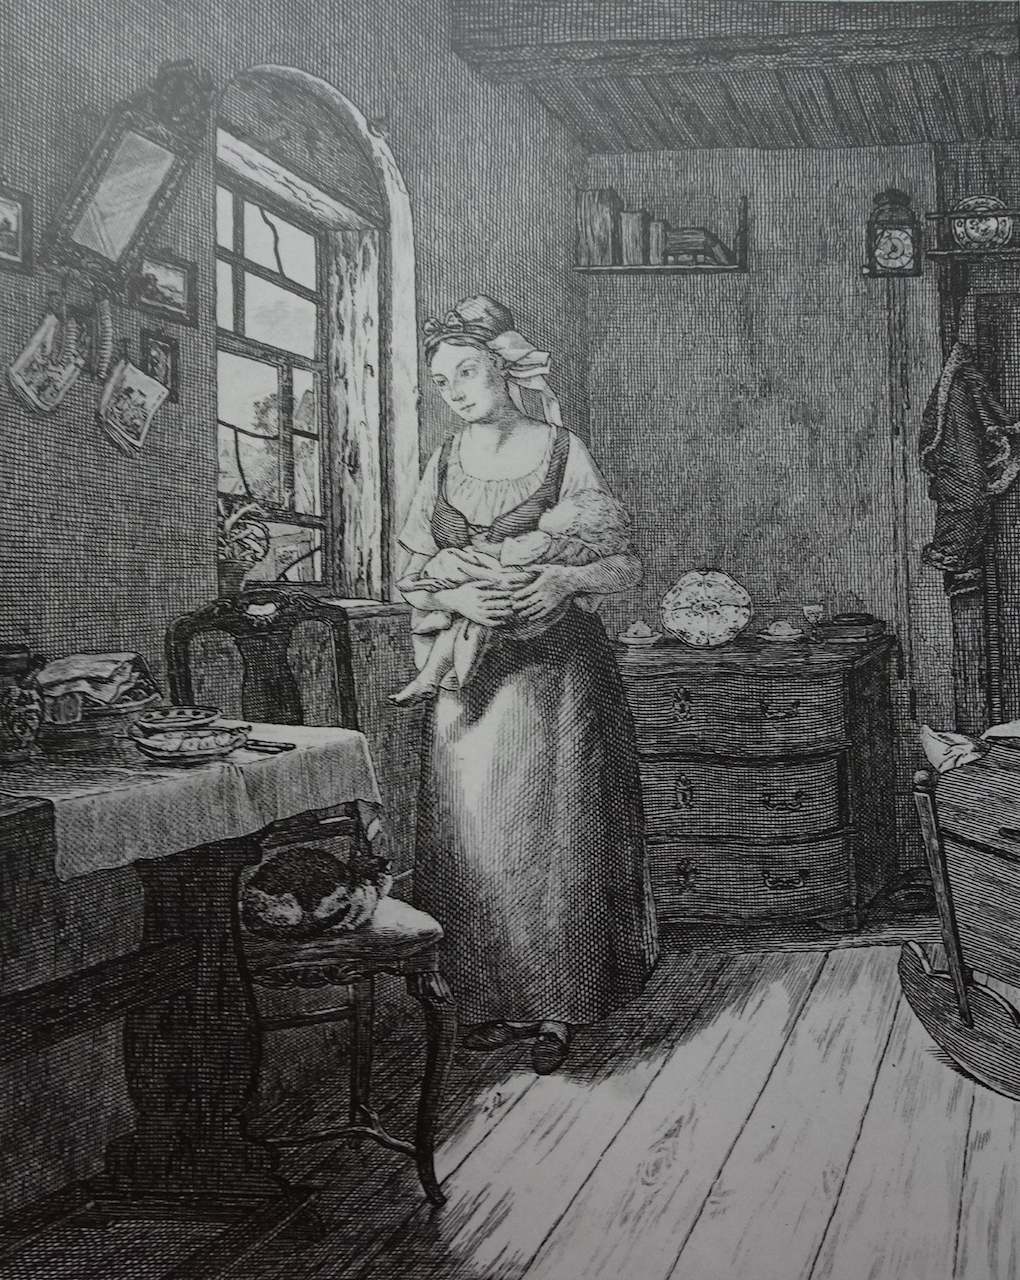 Pötschke według Ludwiga Mosta, Oczekująca (Kobieta wyczekująca męża), 1832, miedzioryt, akwaforta na papierze, rycina reprodukcyjna, Muzeum Narodowe w Szczecinie